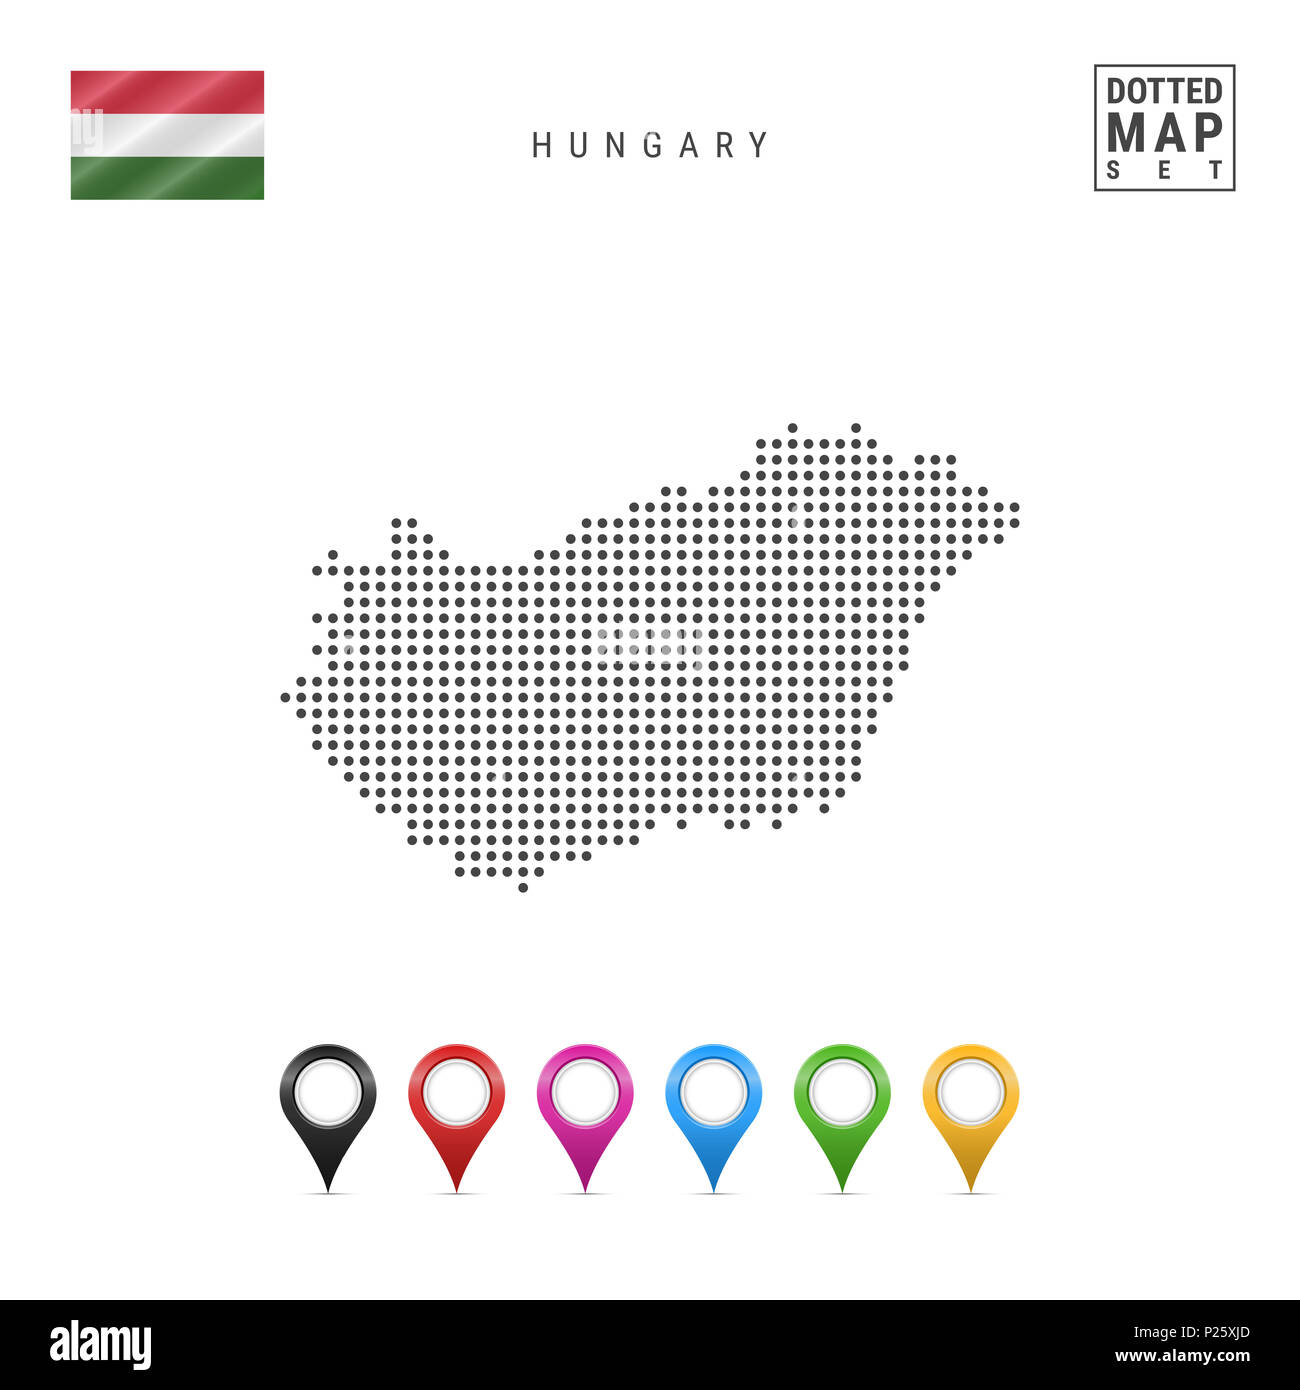 La carte à points de Hongrie. Silhouette simple de la Hongrie. Le drapeau national de la Hongrie. Ensemble de marqueurs de la carte multicolore. Illustration isolé sur blanc Bac Banque D'Images